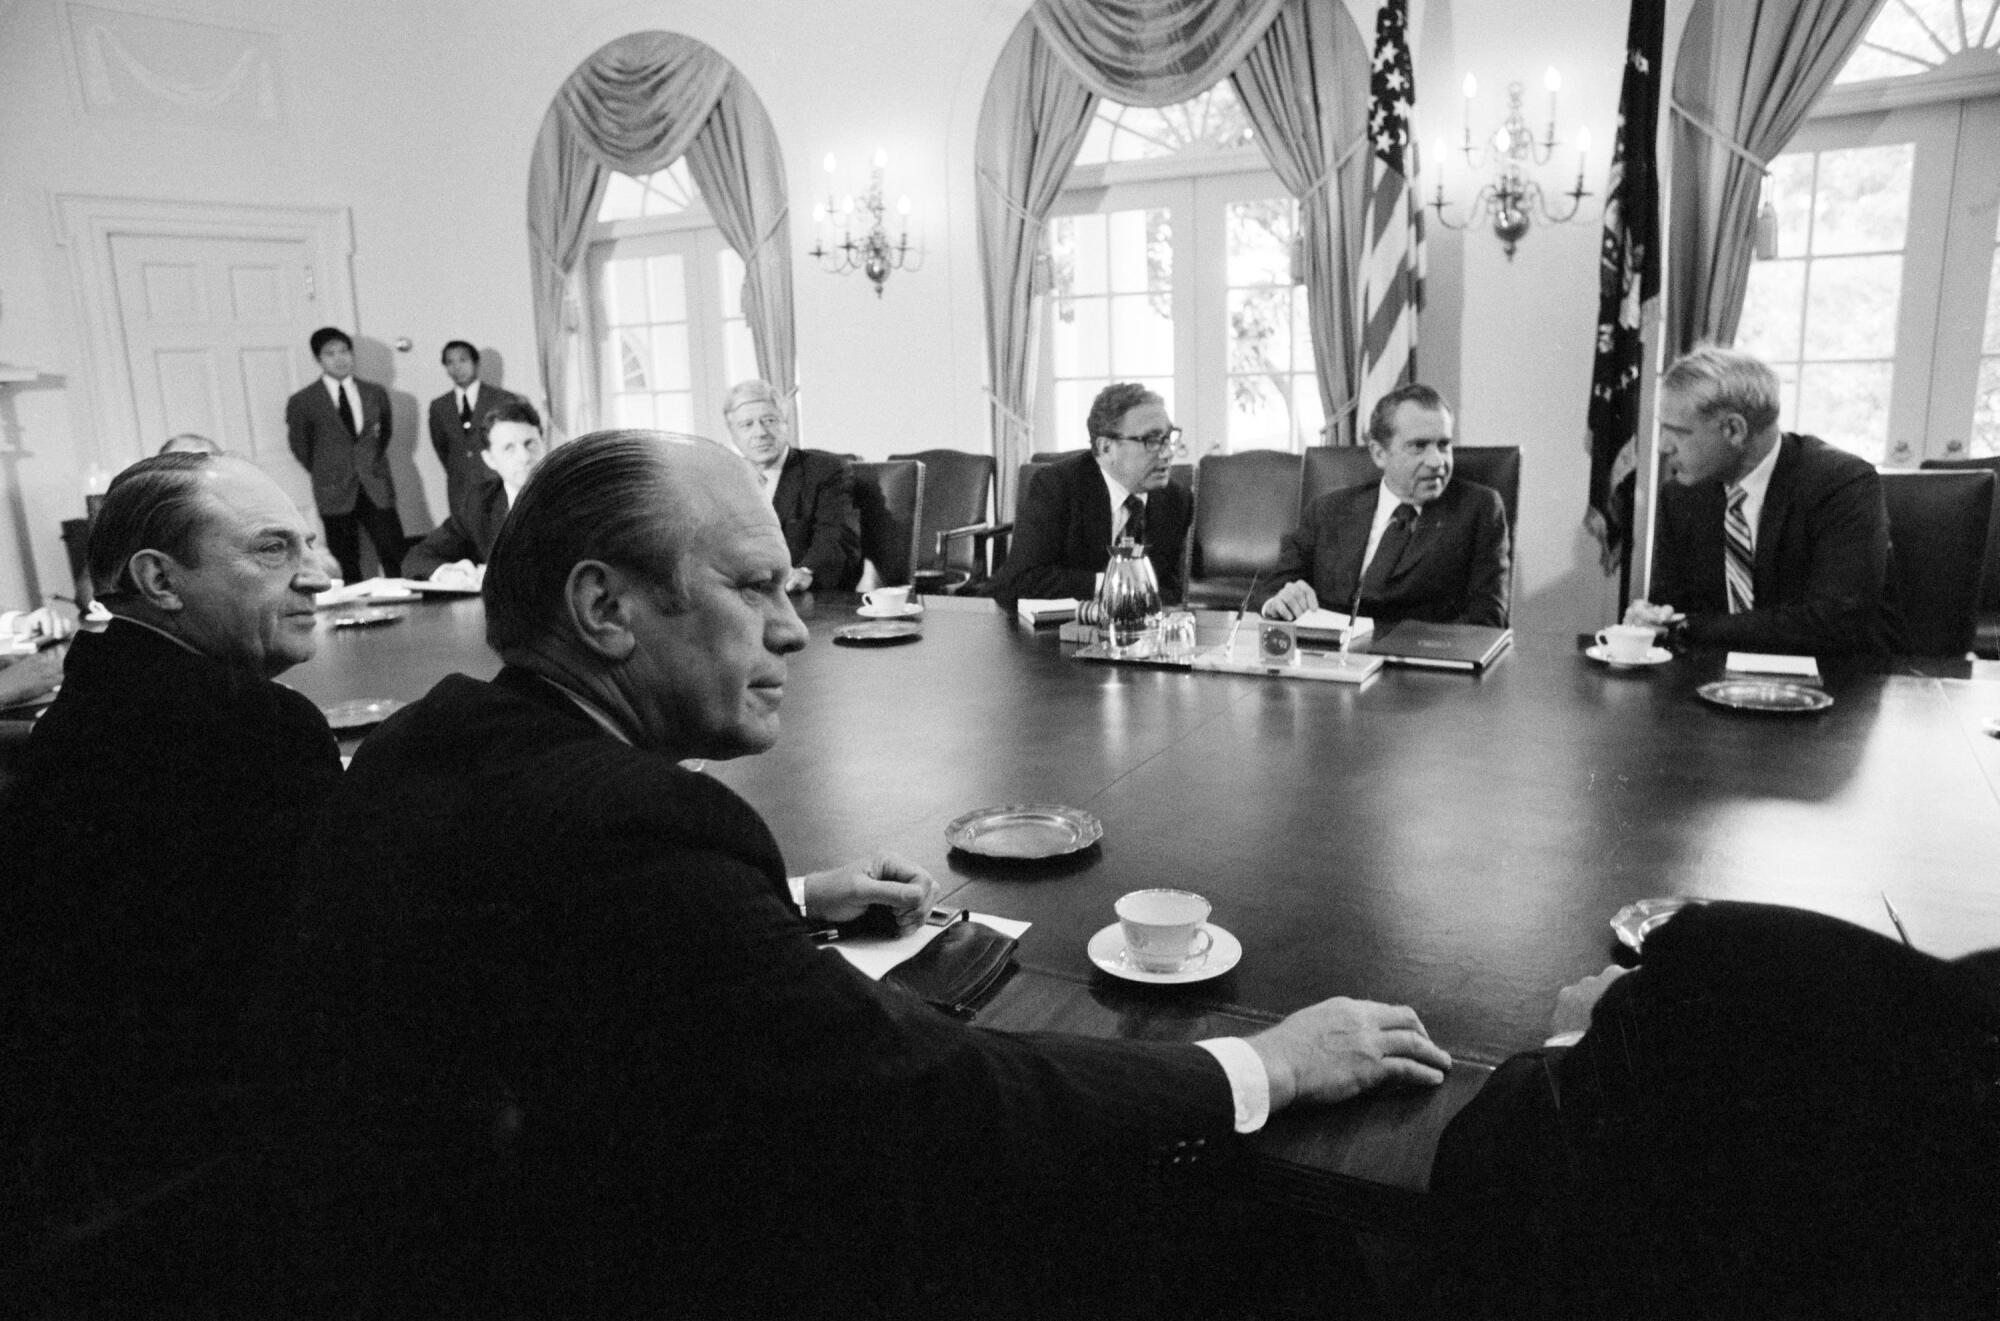 Uma foto em preto e branco de autoridades sentadas em uma mesa em uma sala ornamentada, Gerald Ford em primeiro plano, em frente a Richard Nixon